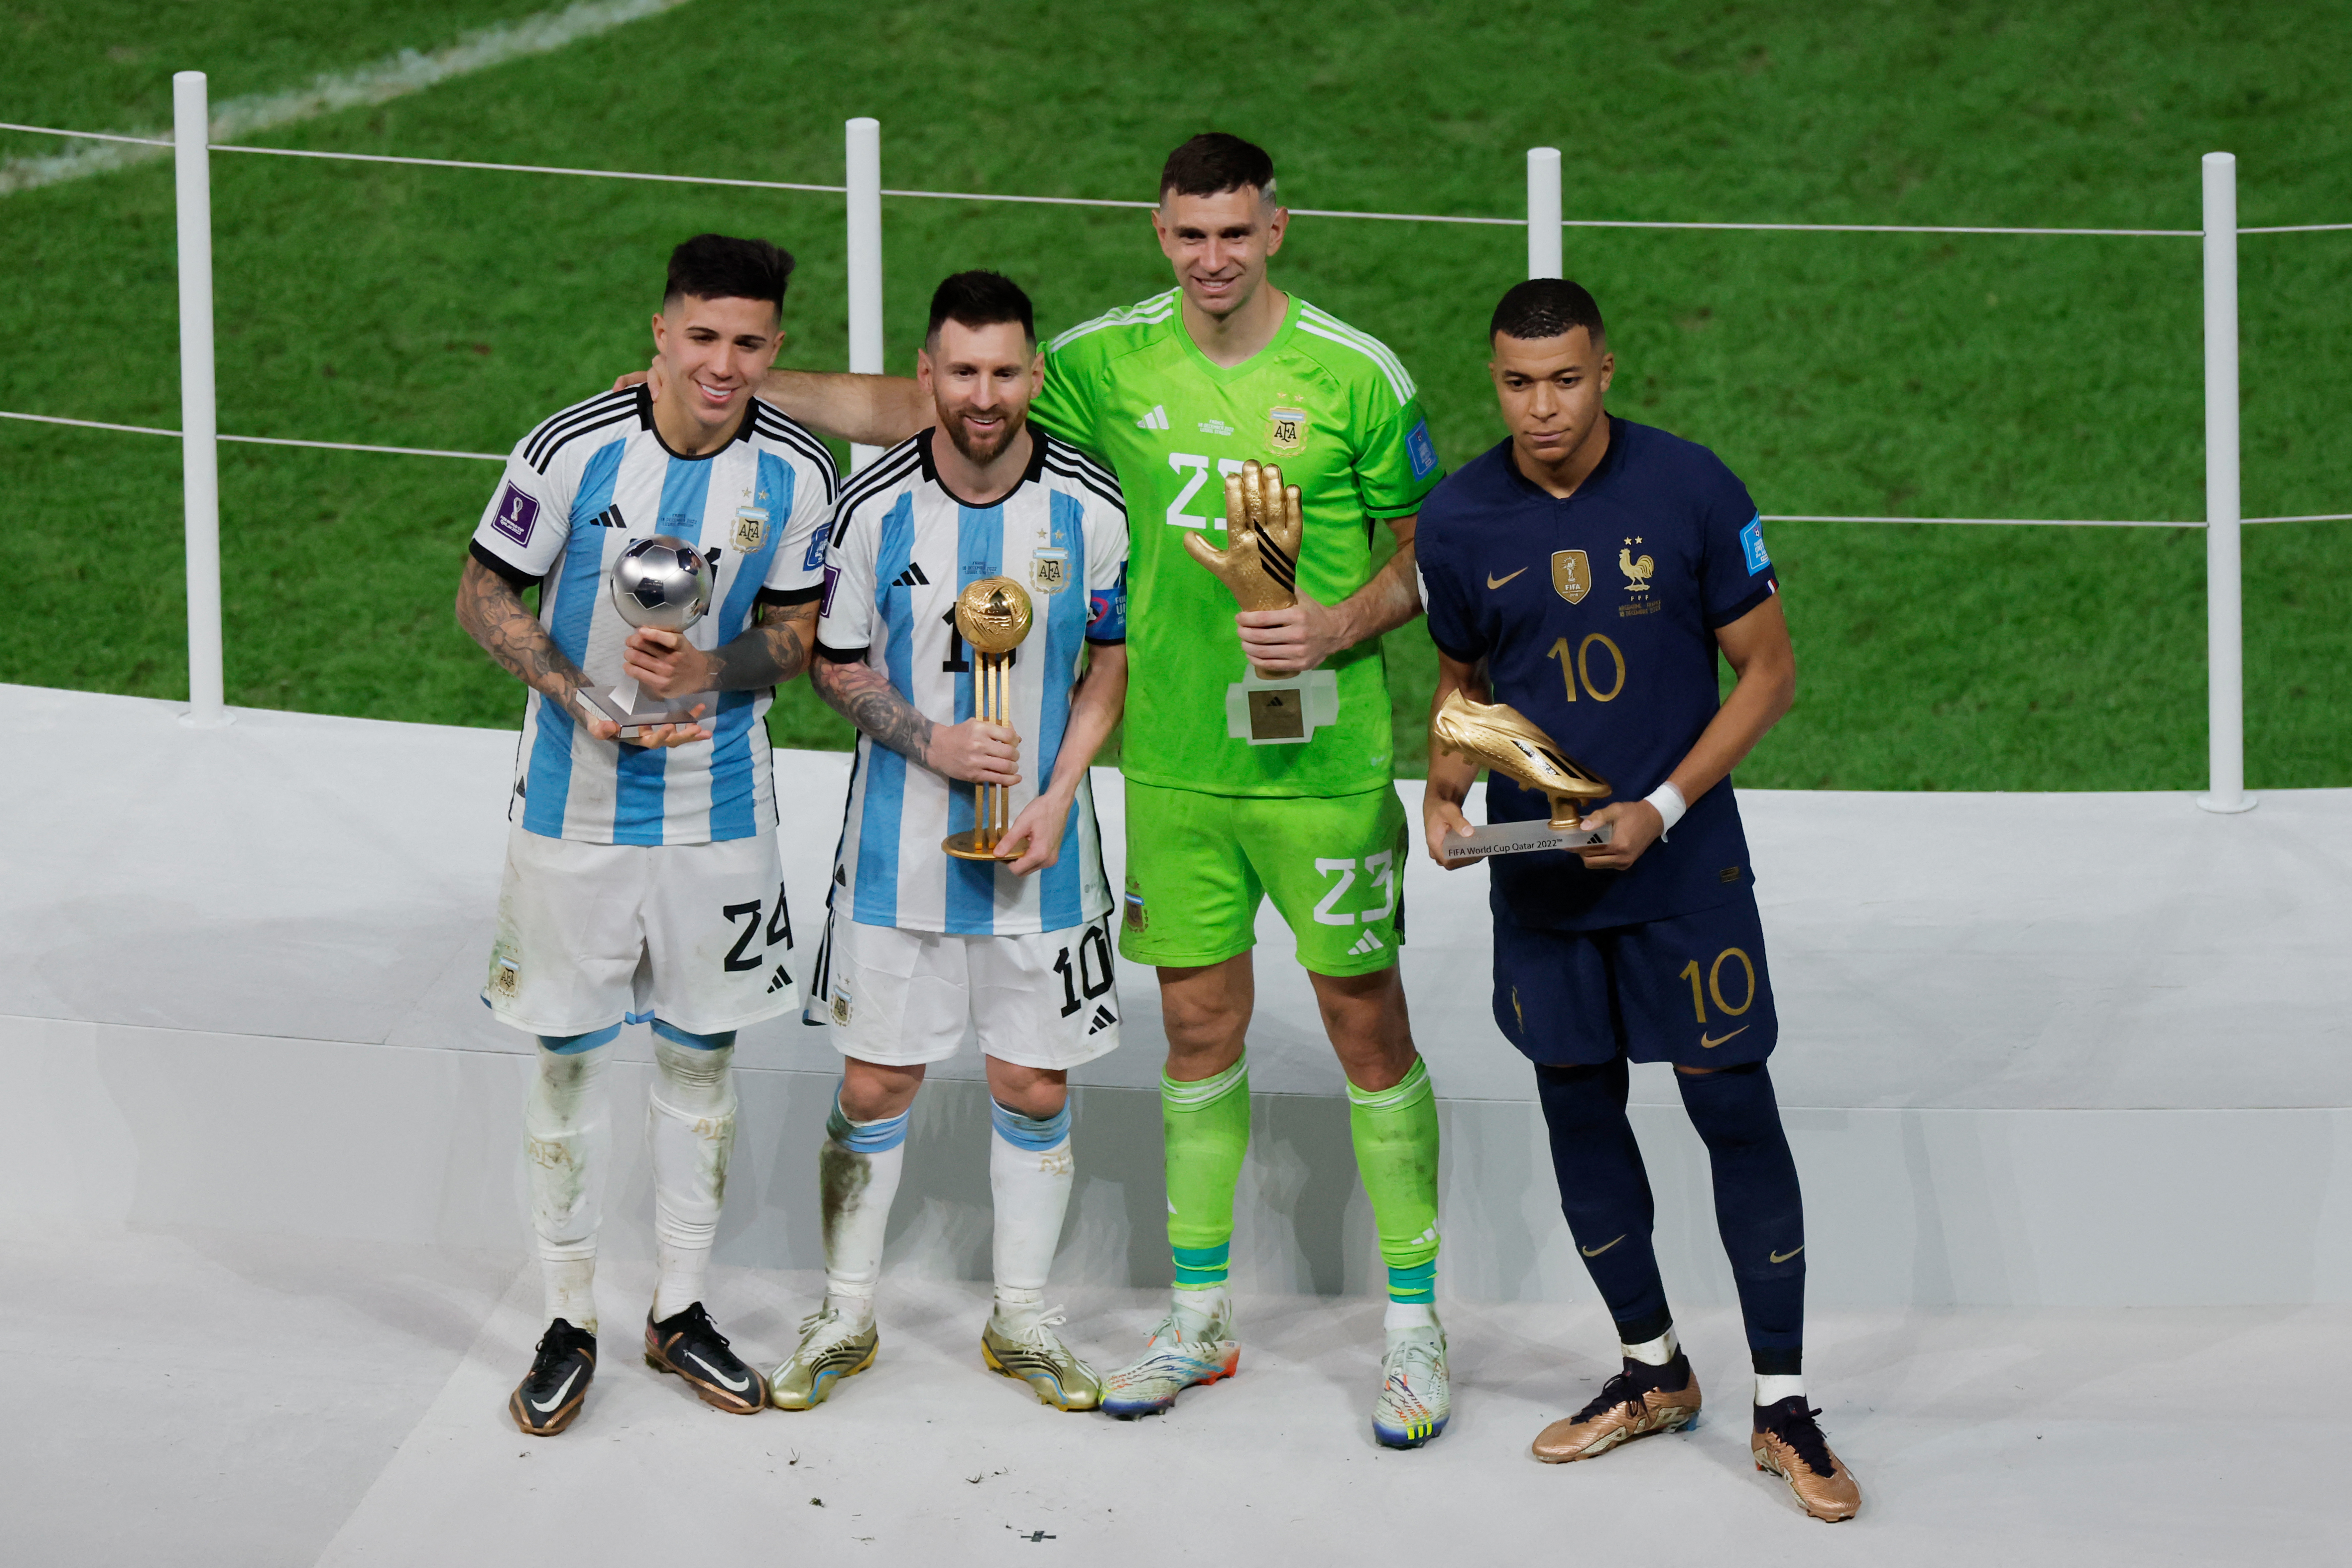 Copa do Mundo 2018: Quem levou os prêmios de melhor do Mundial